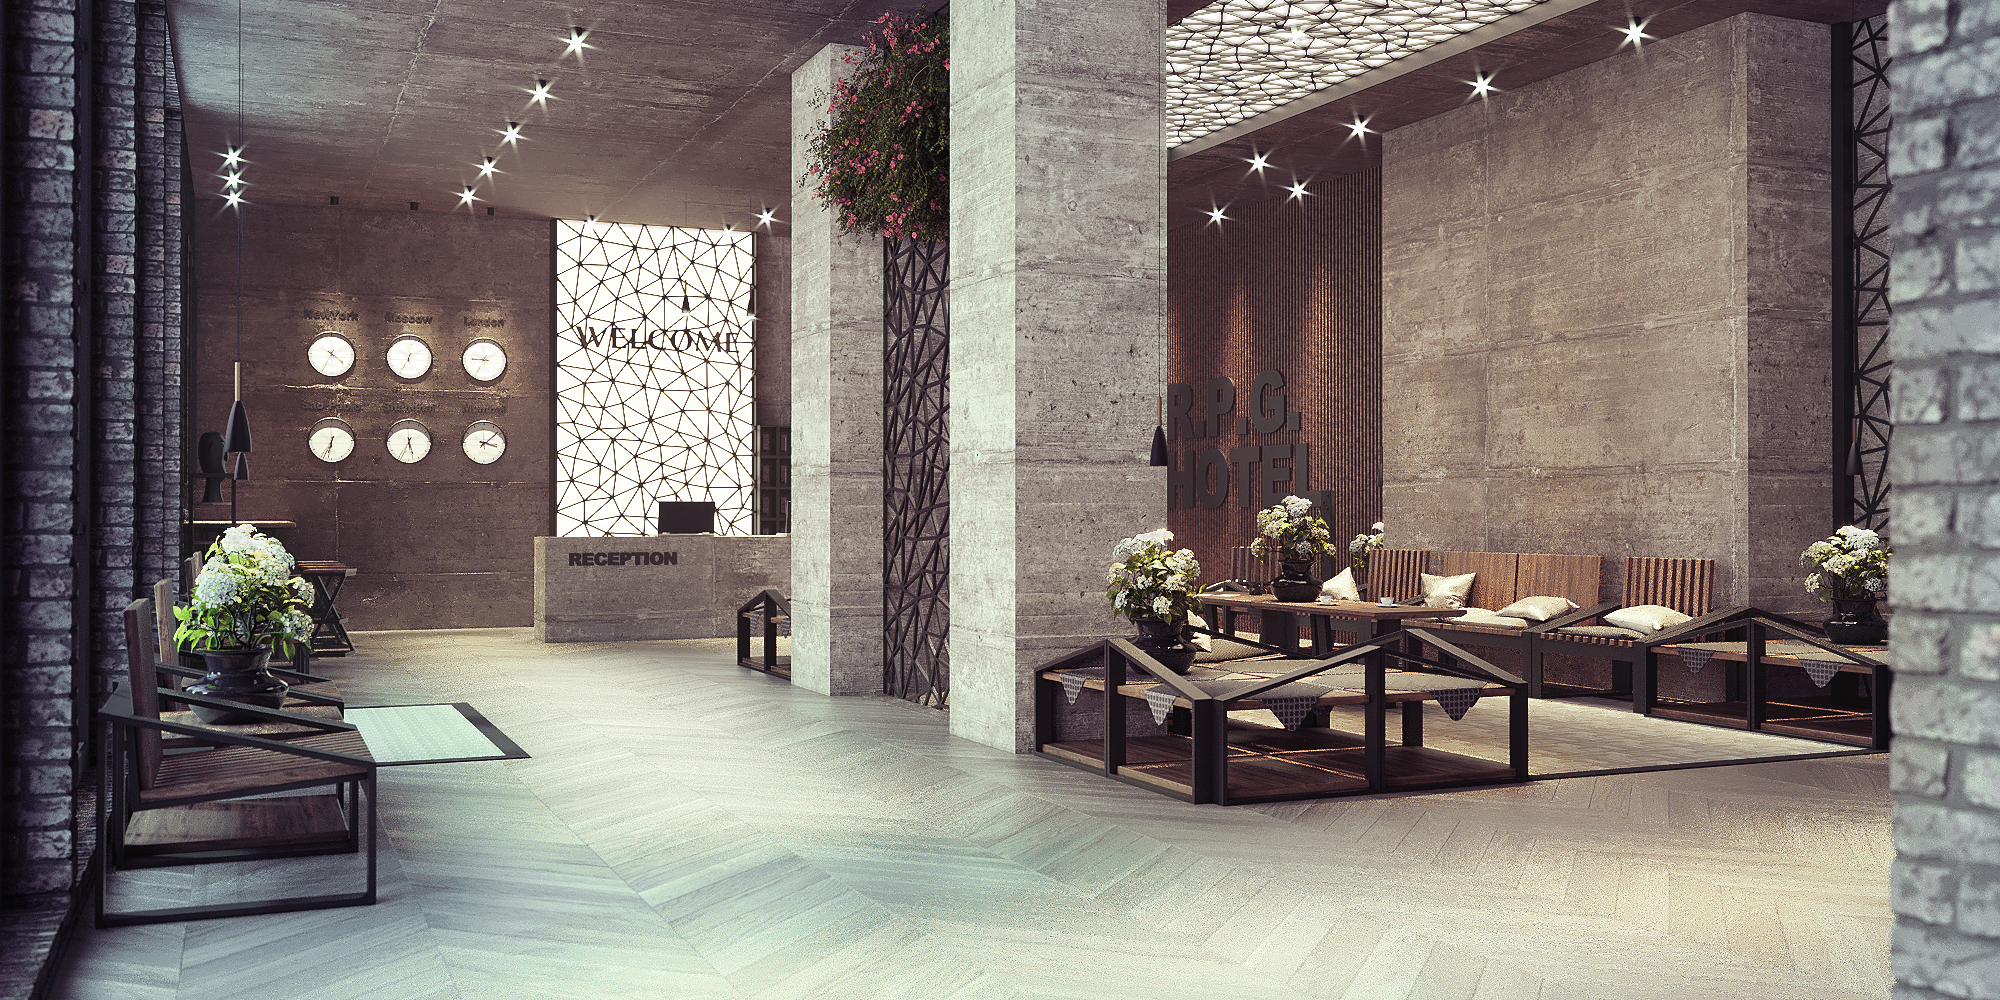 Recepcja lobby hotelowe w loftowym stylu ze stali i drewna